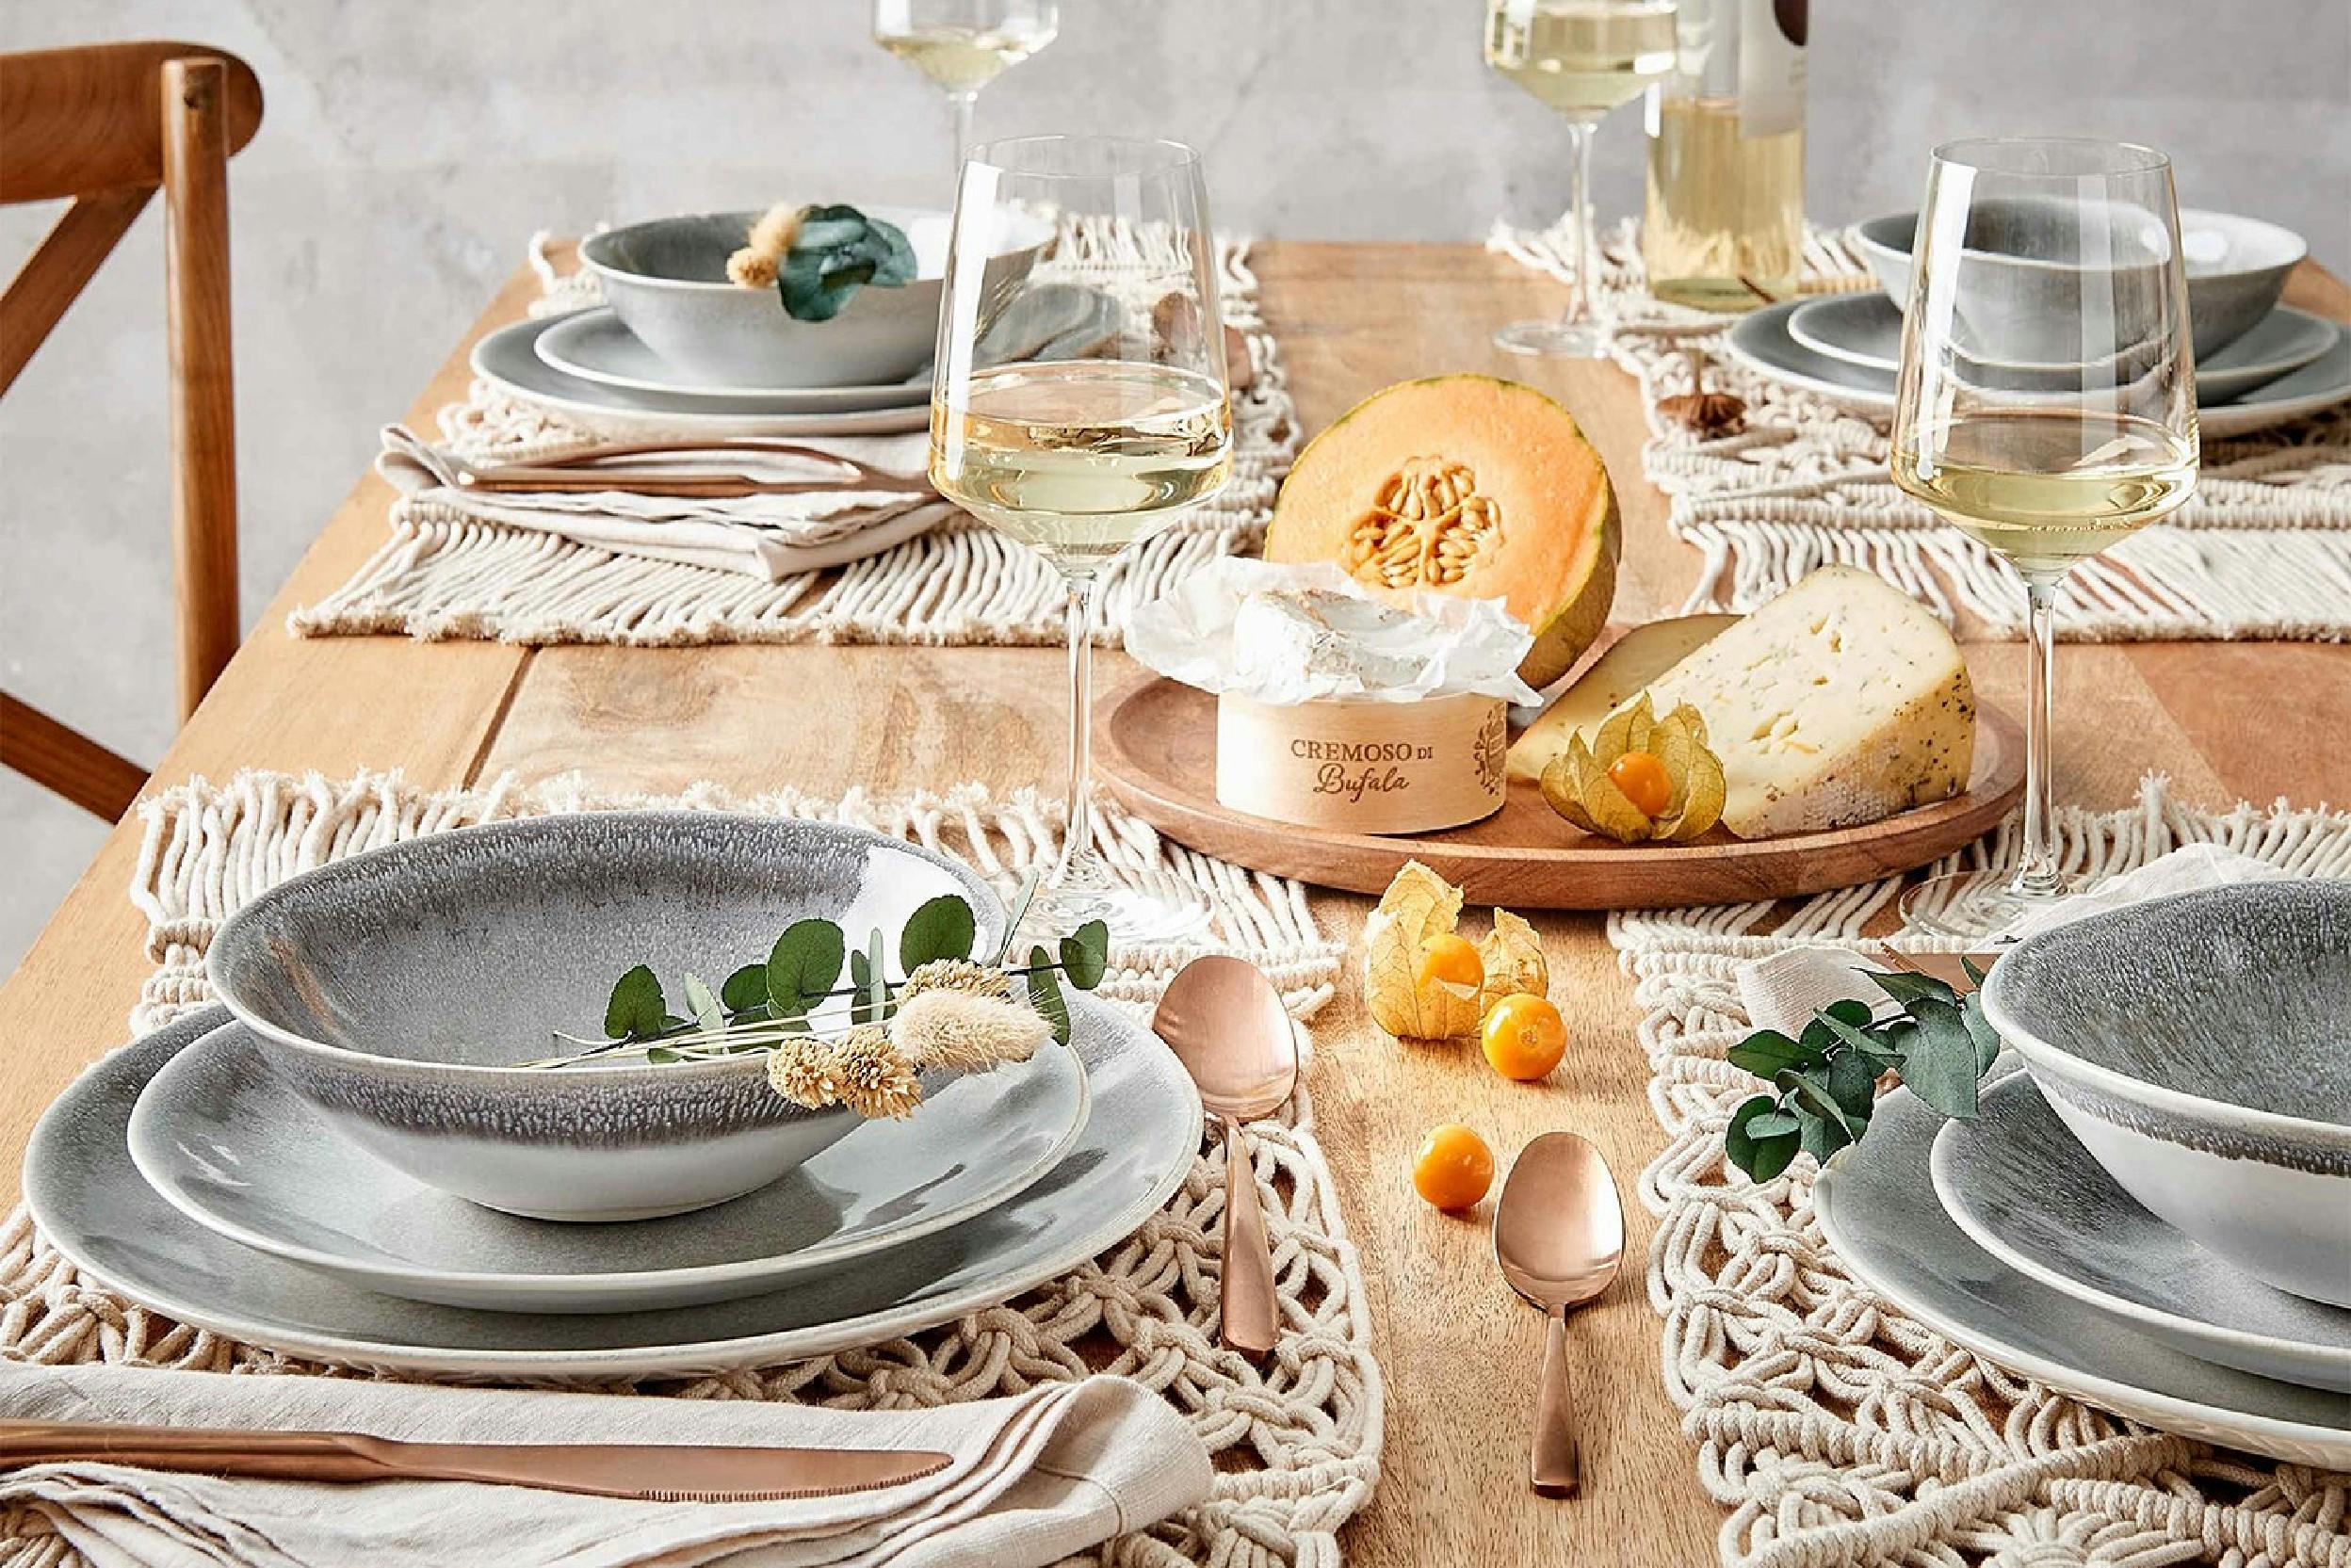 Tisch schön aufgedeckt mit Macramé Tischset, verschiedene Teller und Schalen, Gläser, Käse und Melone.